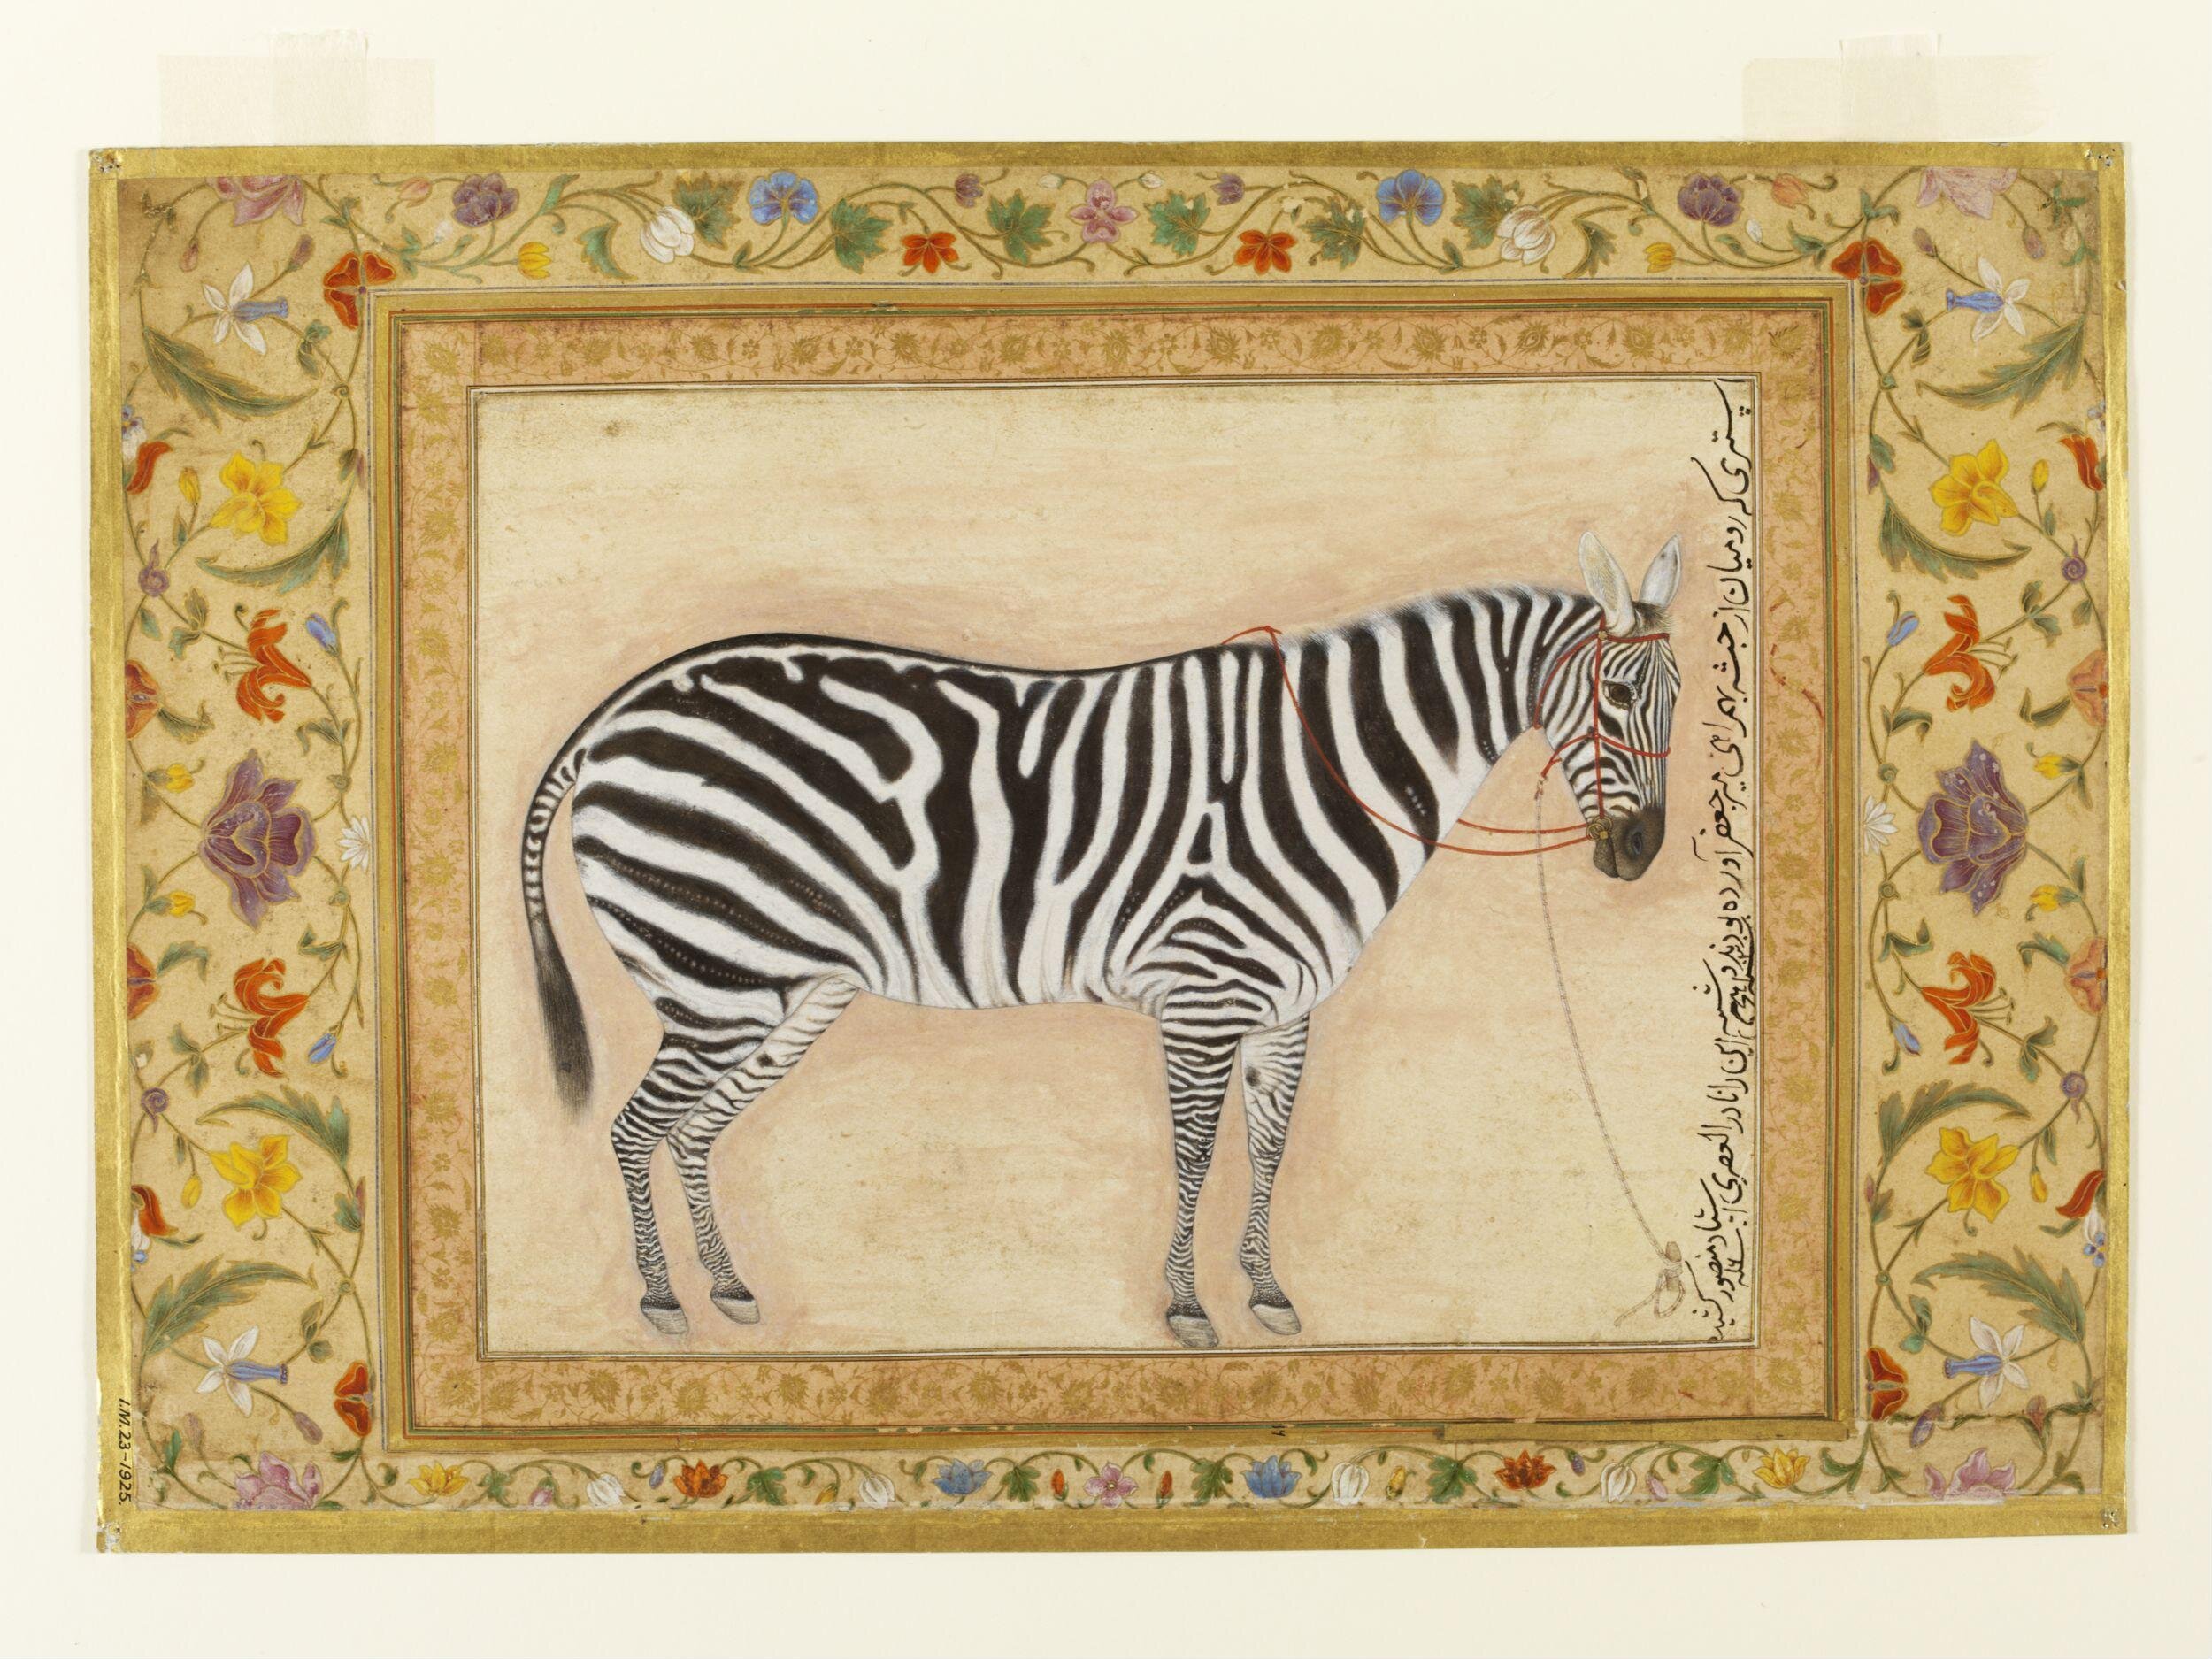 얼룩말 (Zebra) by Ustad Mansur - 1621 - 38.7 x 24cm 